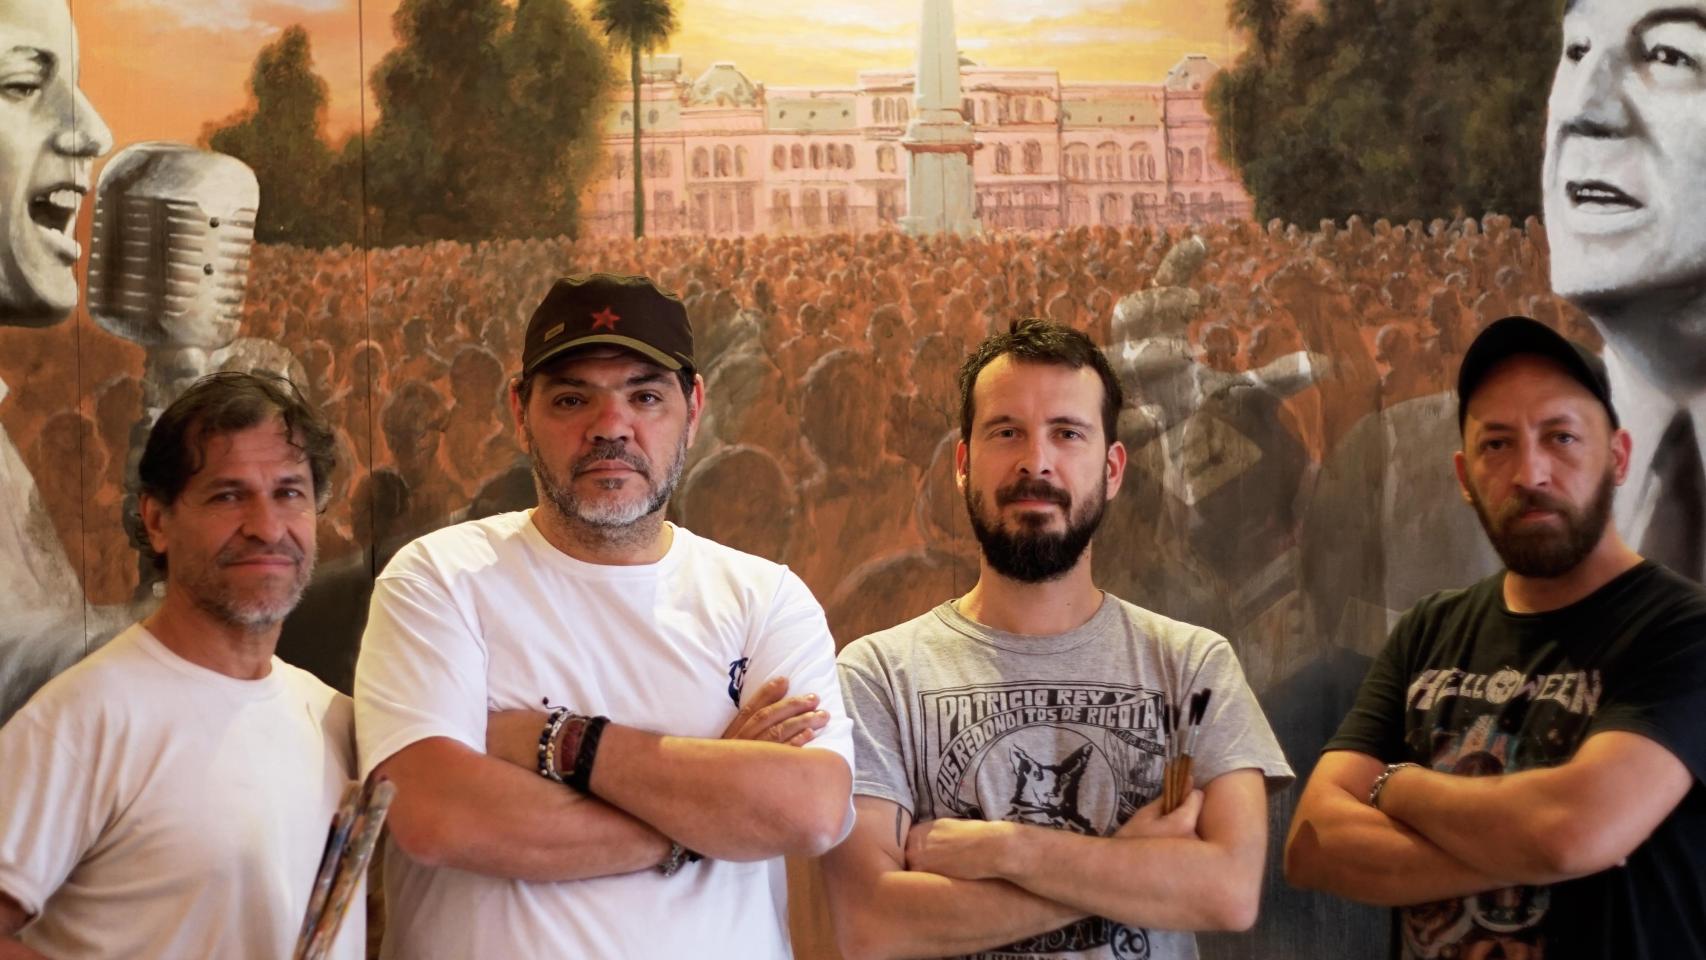 Frente al mural peronista del restaurante, su creador, el artista Juan Danna, el fundador de Perón-Perón, Daniel Narezo, el fileteador Facundo Leguizamón y el chef Lucas Winkelmann, de izquierda a derecha.